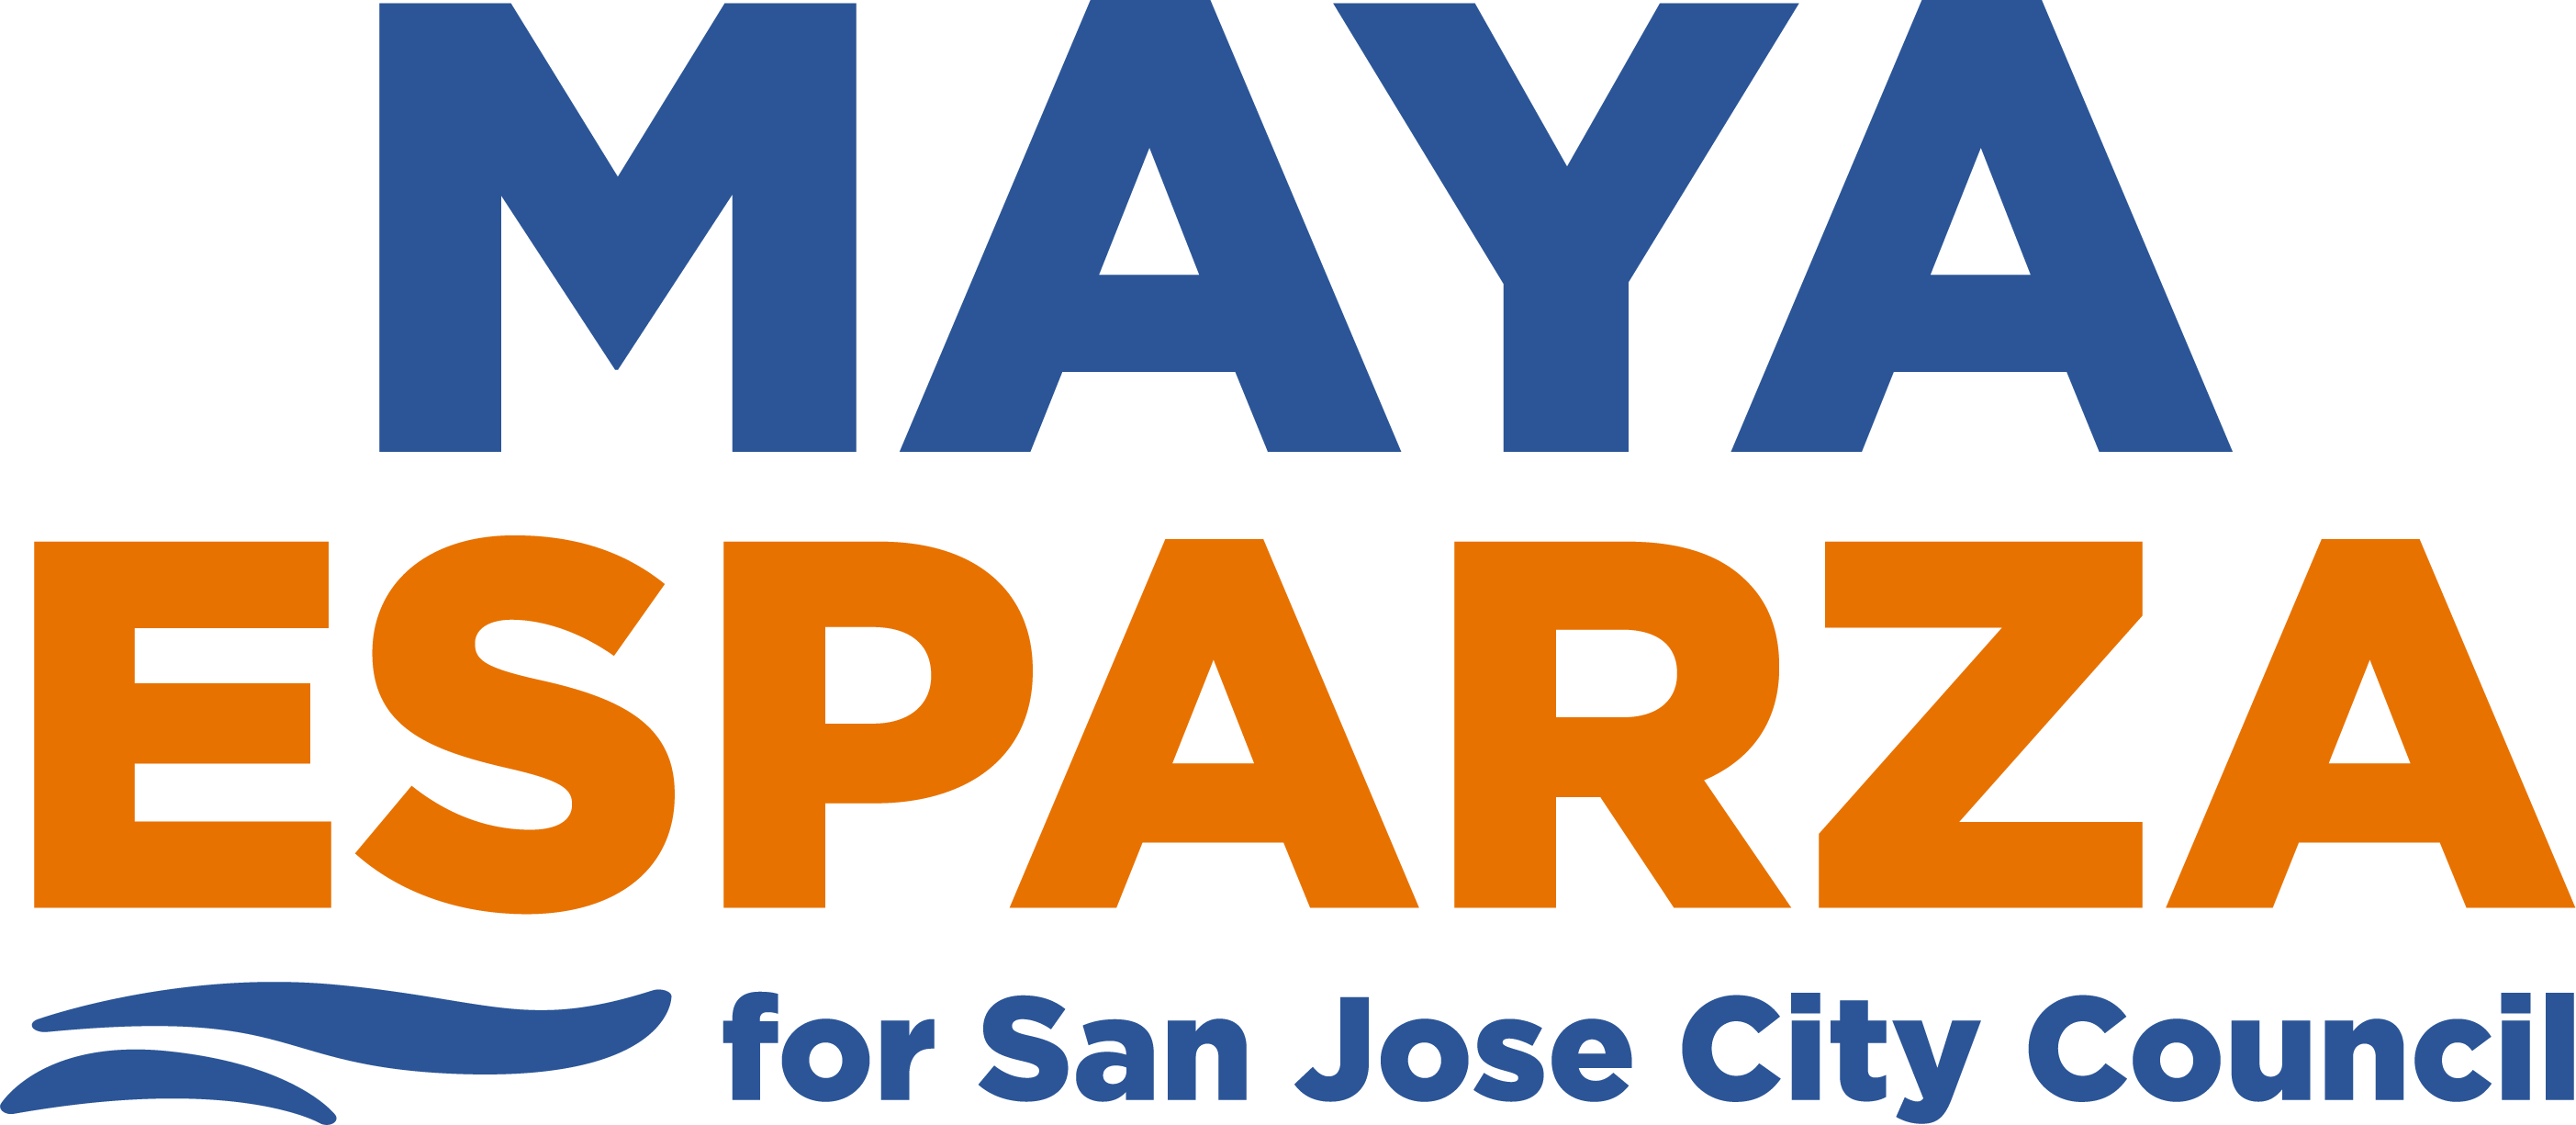 Maya Esparza for San Jose City Council